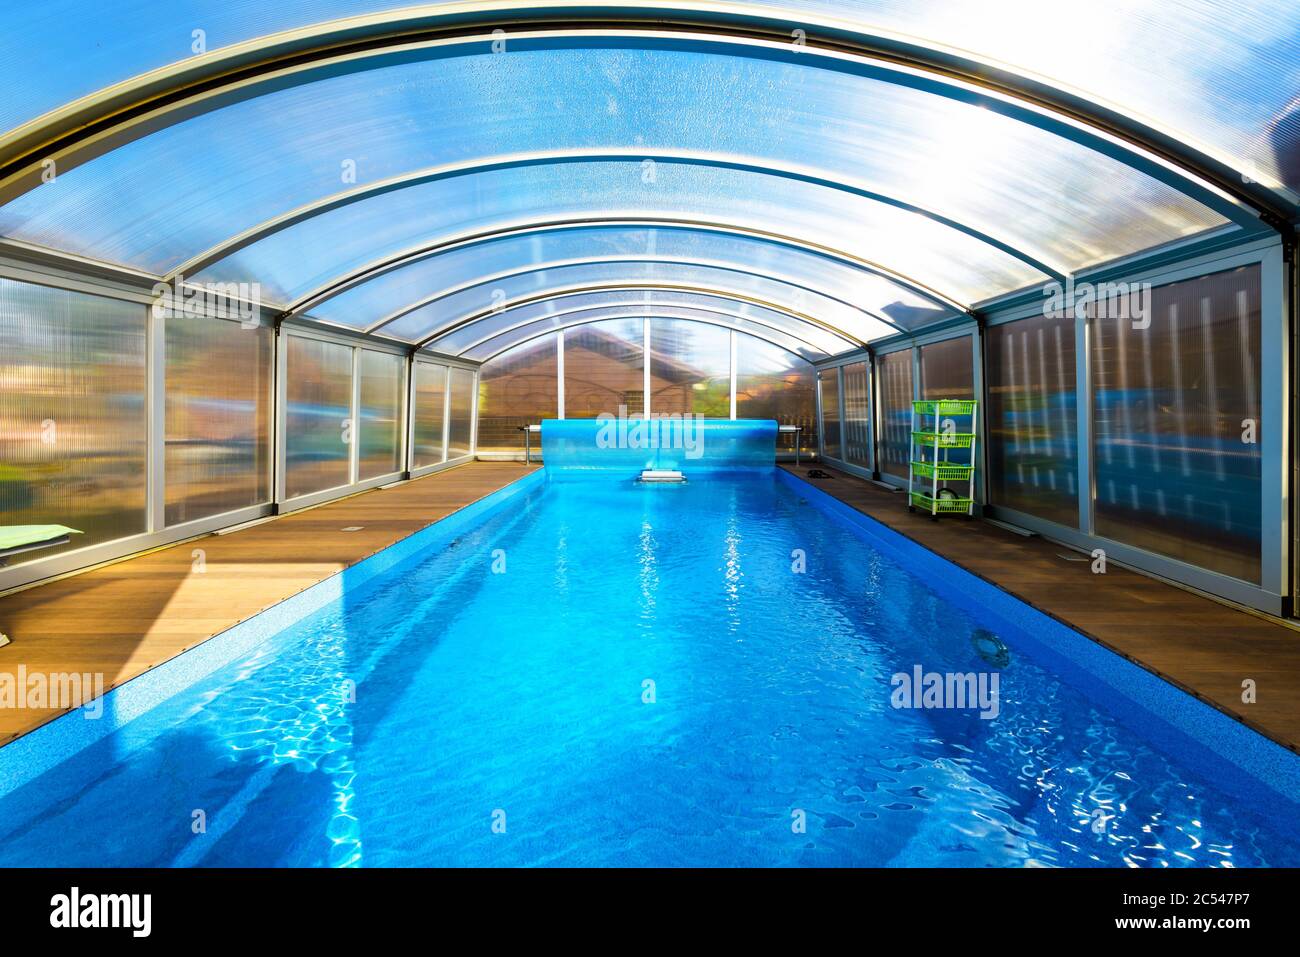 Piscine avec eau bleue et tente en plastique transparent. Style moderne de la piscine avec mur et toit pliants. Belle piscine contemporaine dans la cour de la maison Banque D'Images